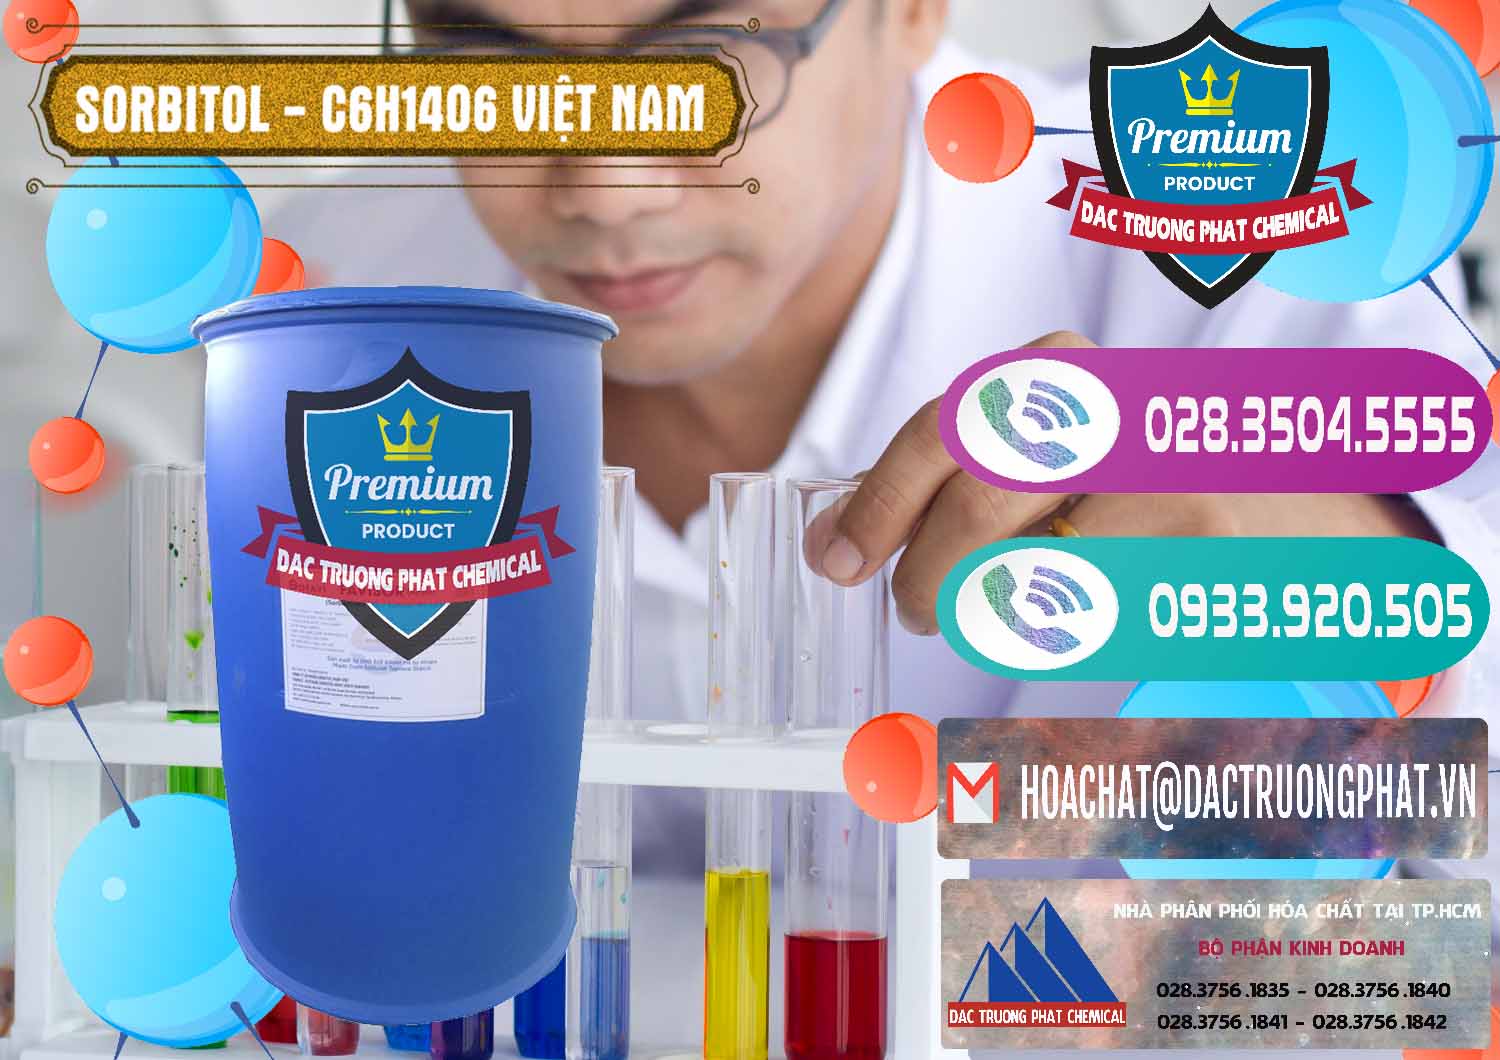 Đơn vị chuyên phân phối ( cung ứng ) Sorbitol - C6H14O6 Lỏng 70% Food Grade Việt Nam - 0438 - Nơi chuyên kinh doanh và cung cấp hóa chất tại TP.HCM - hoachatxulynuoc.com